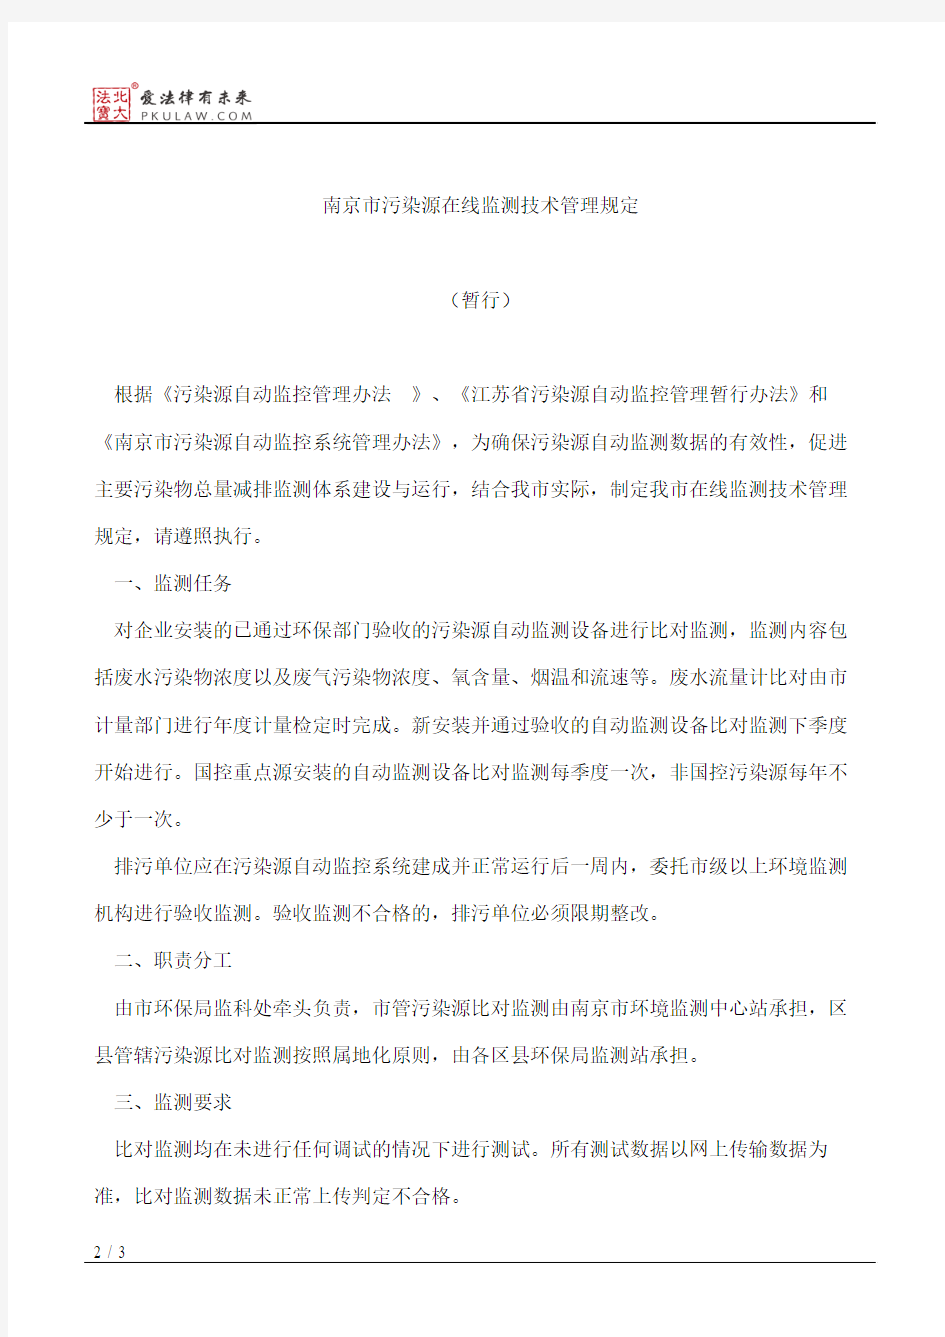 南京市环境保护局关于下发《南京市在线监测技术管理规定(暂行)》的通知